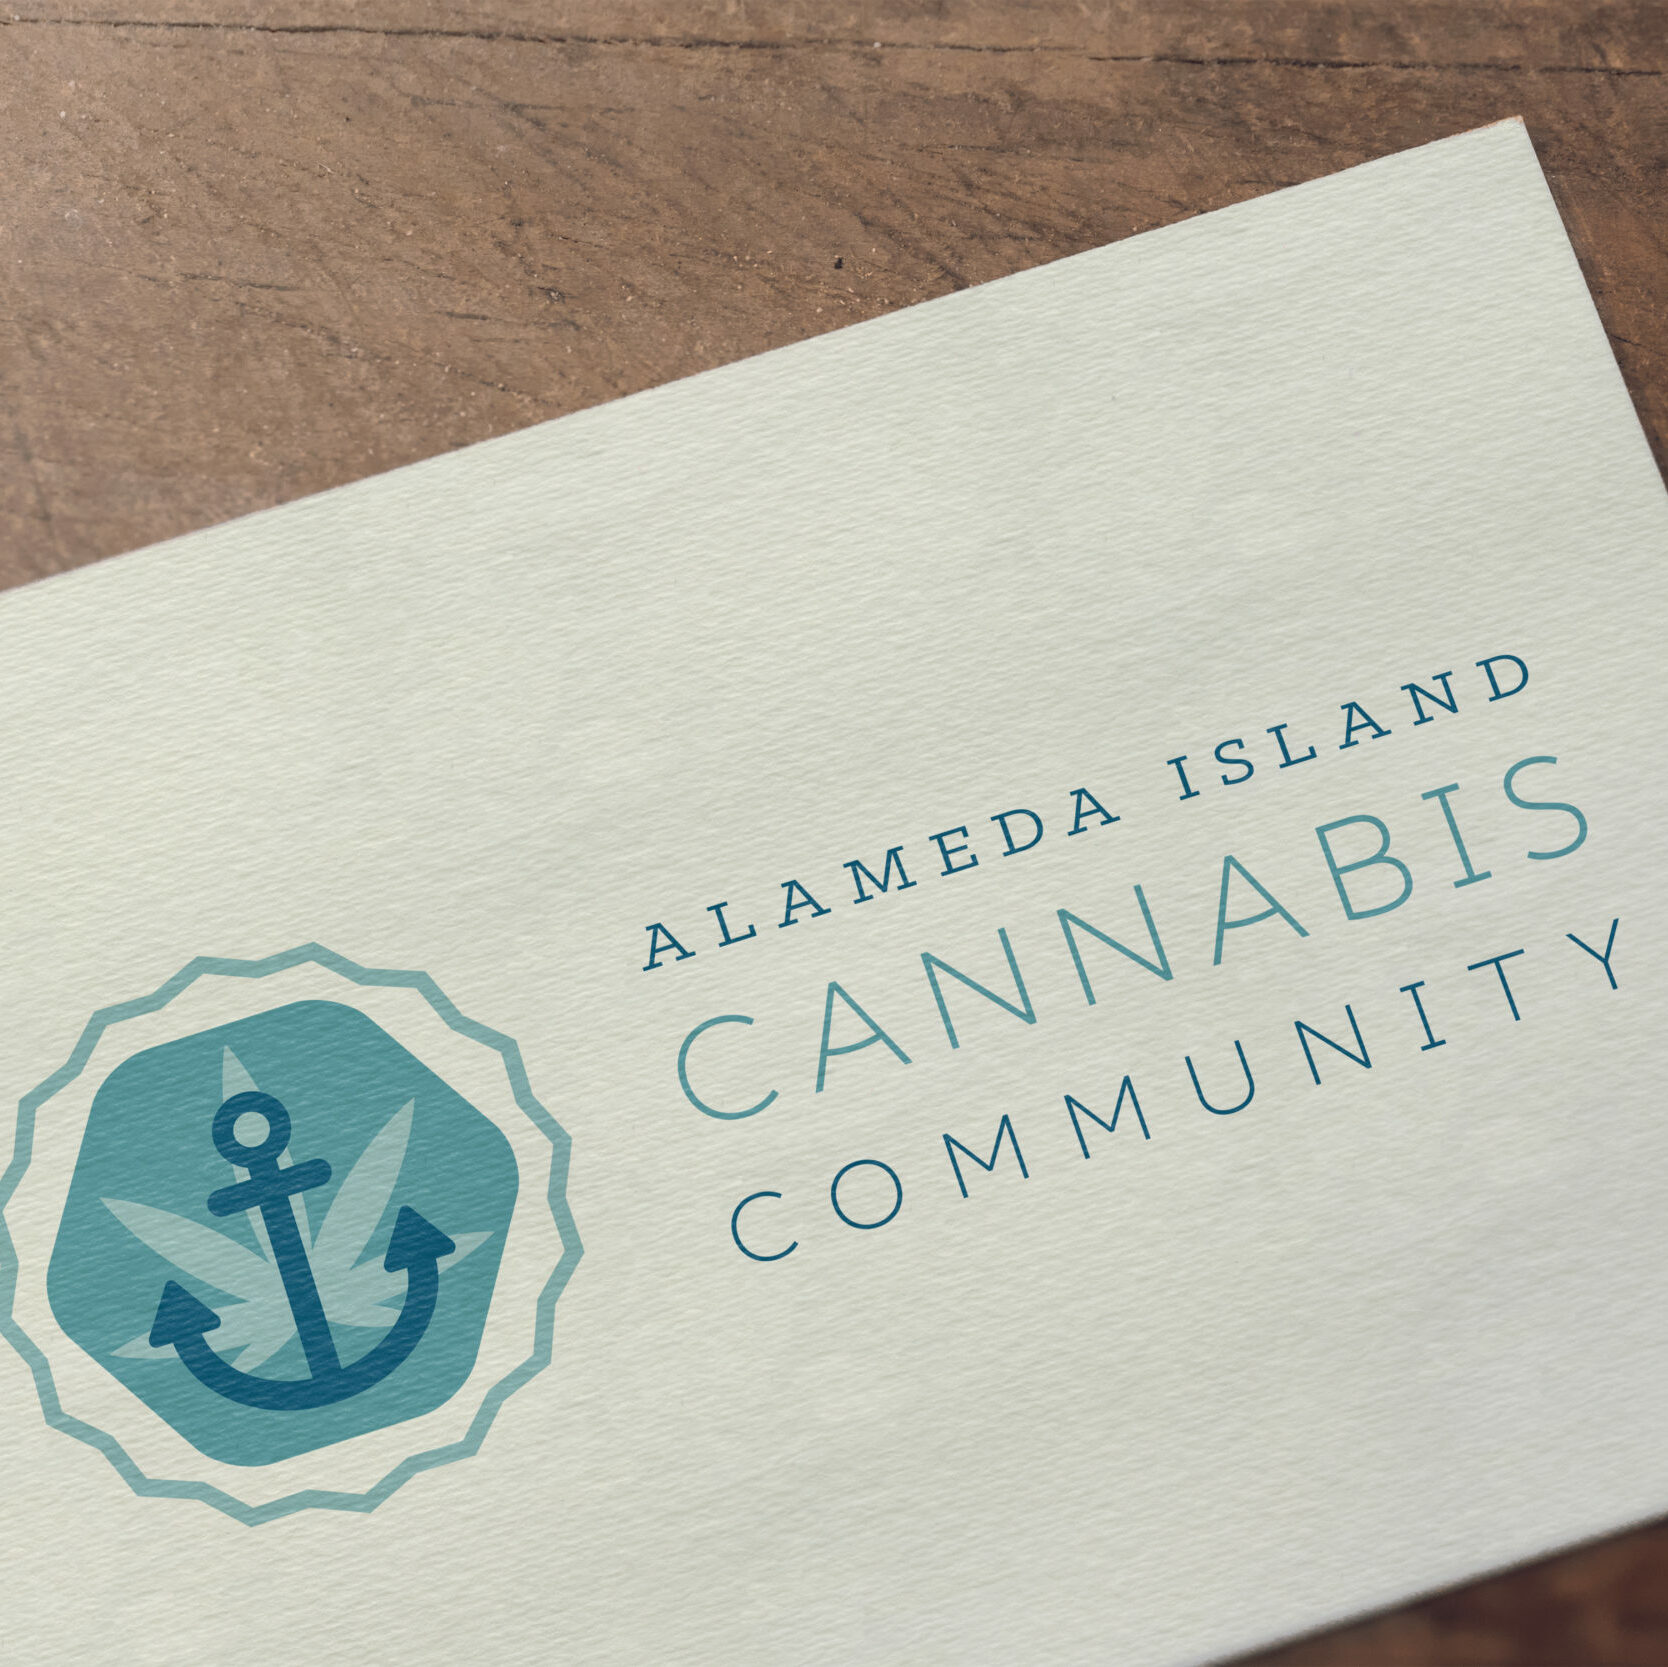 Alameda Island Cannabis Community